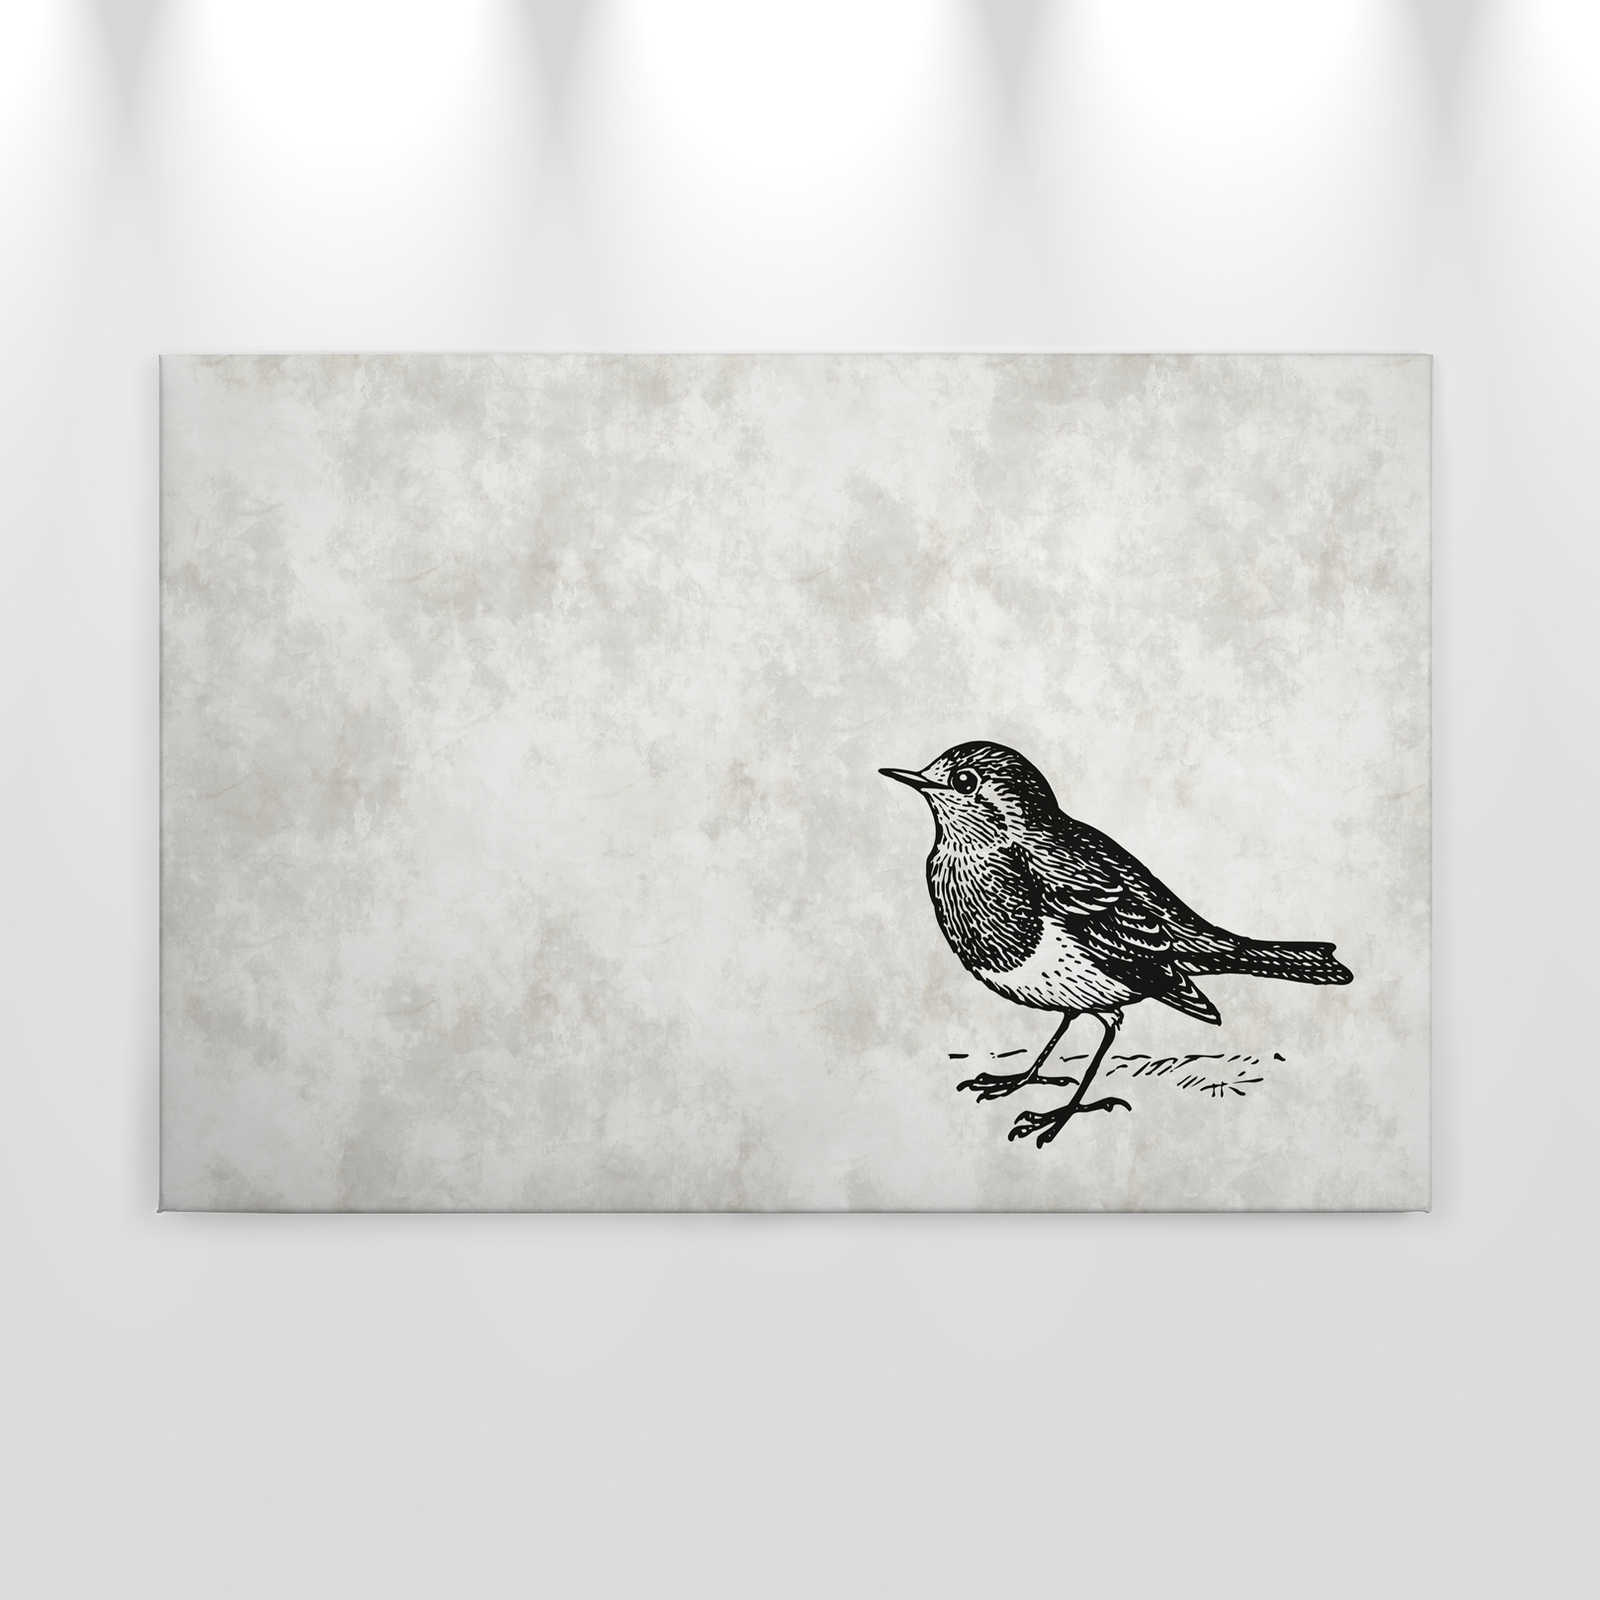             Quadro su tela in bianco e nero con uccello - 0,90 m x 0,60 m
        